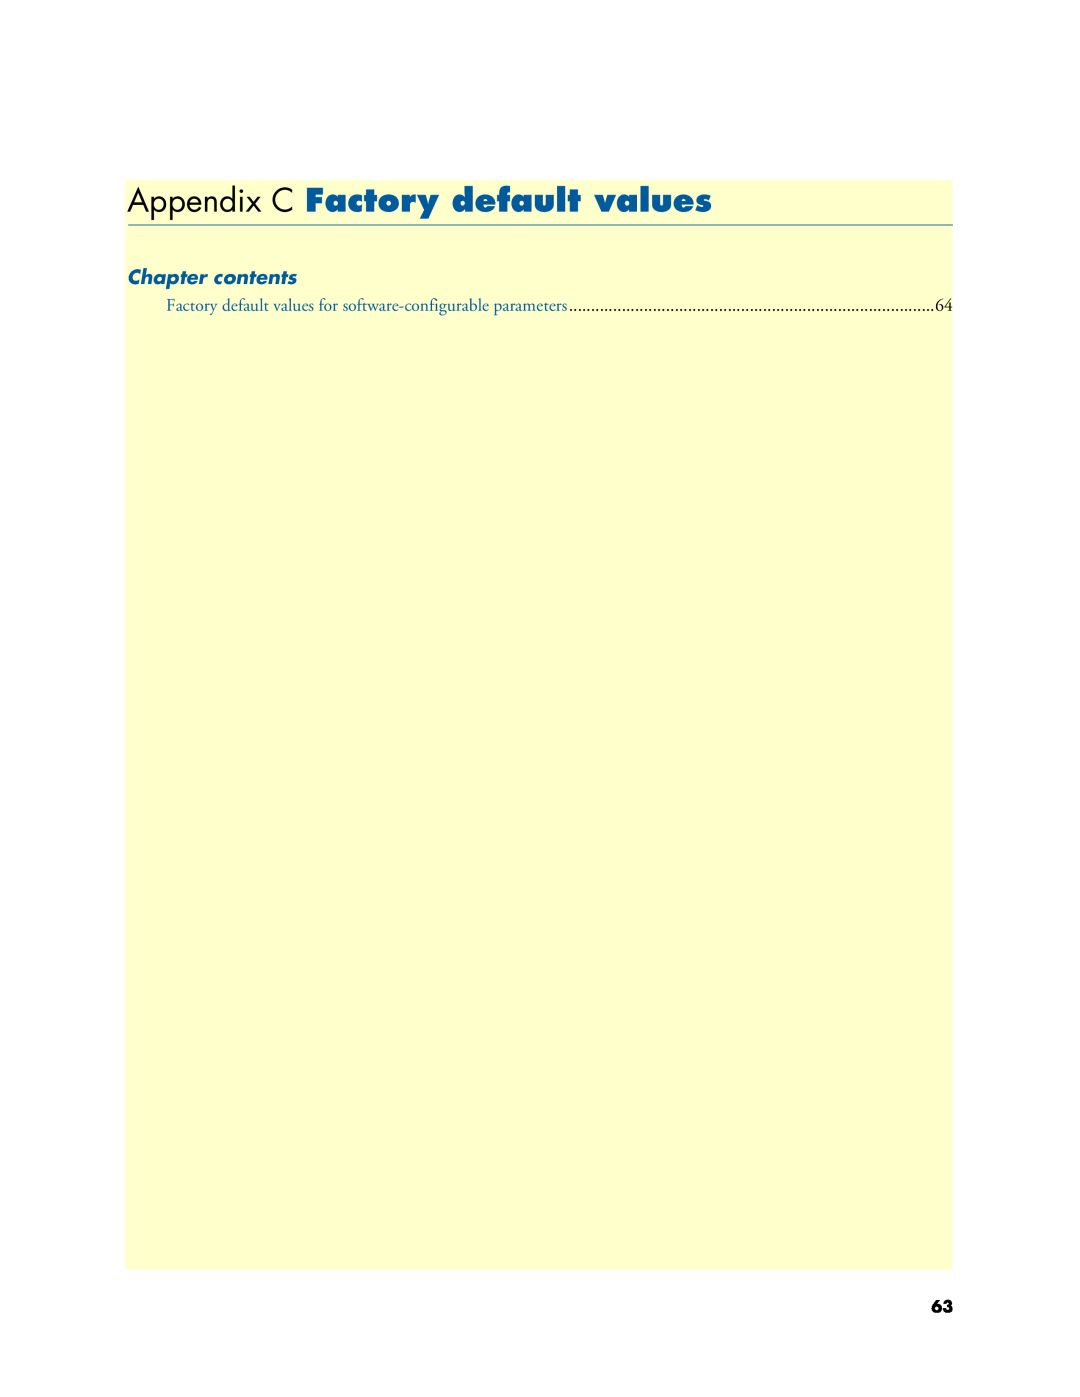 Patton electronic 3088A manual Appendix C Factory default values, Chapter contents 